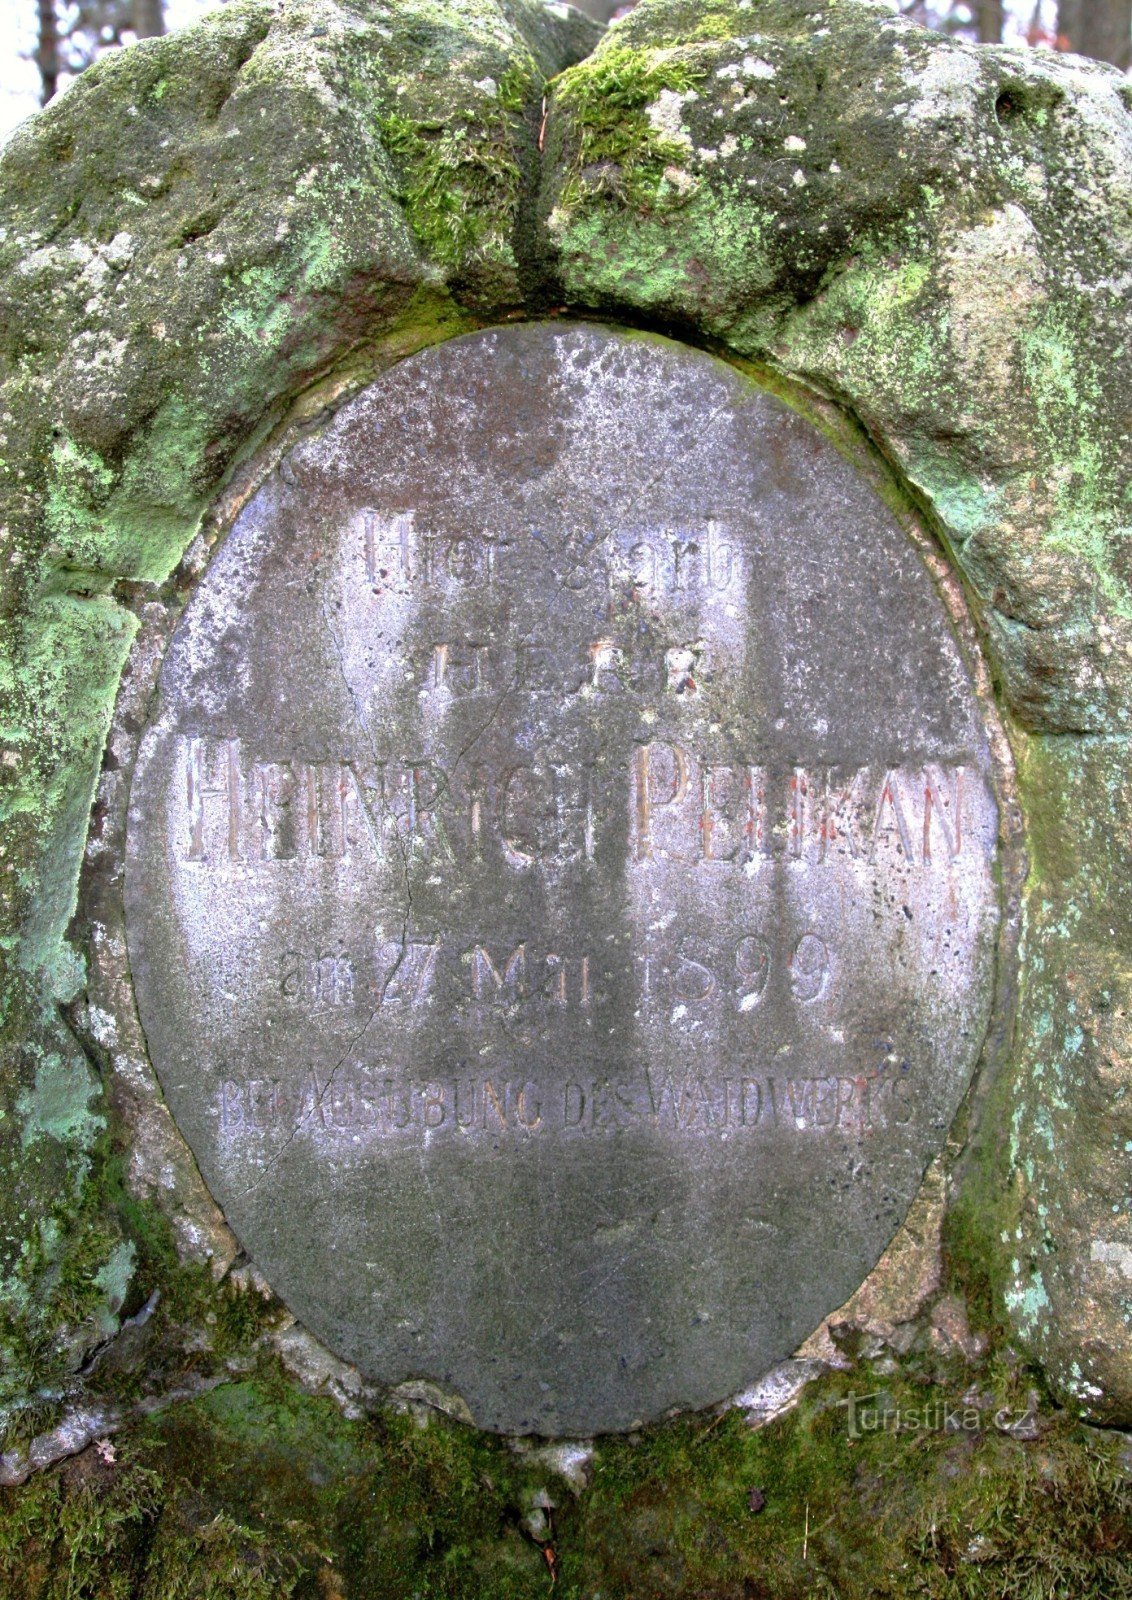 Detalhe da inscrição no monumento